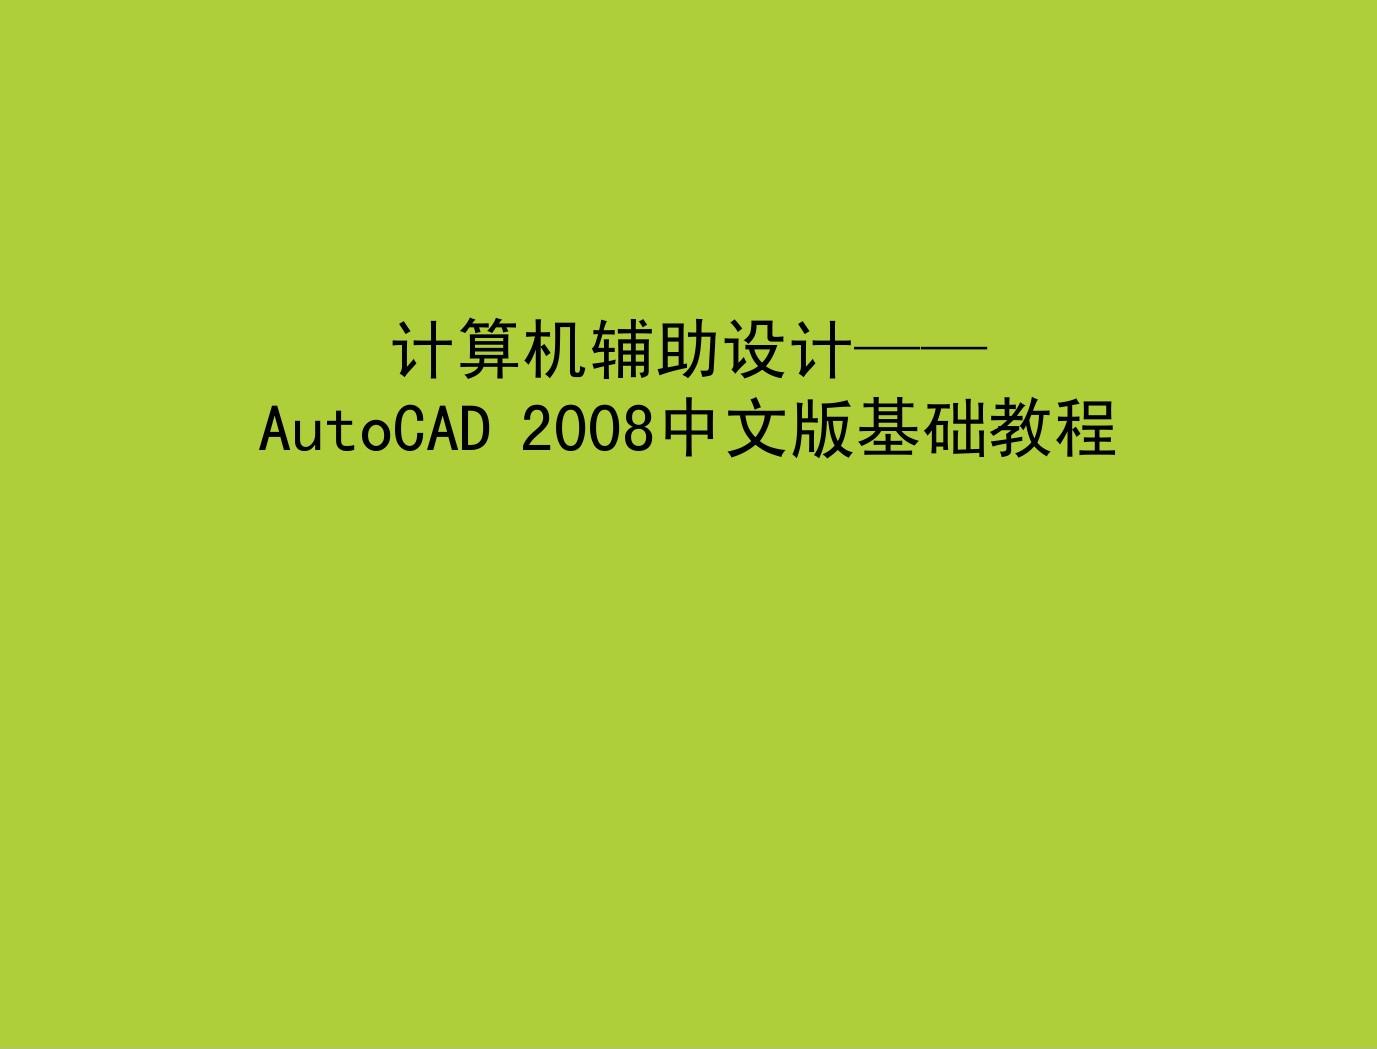 第1章 AutoCAD用户界面及基本操作